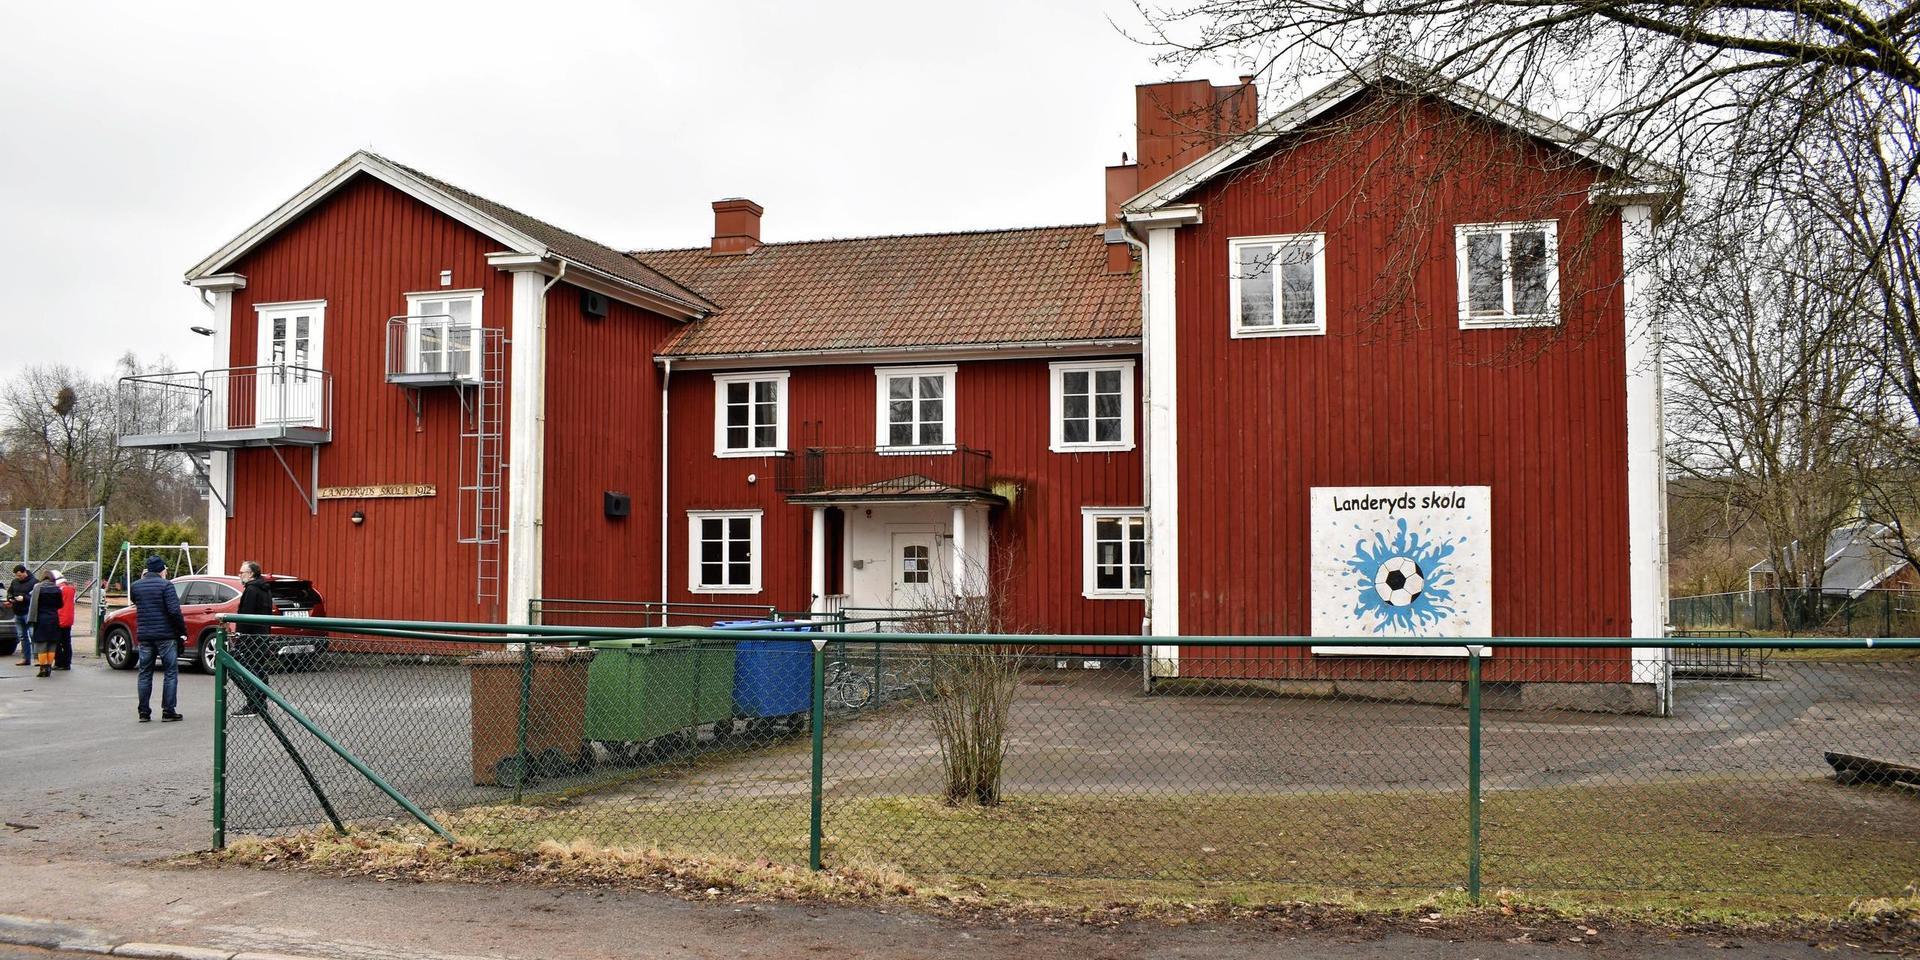 Landeryds befintliga skola från 1912.